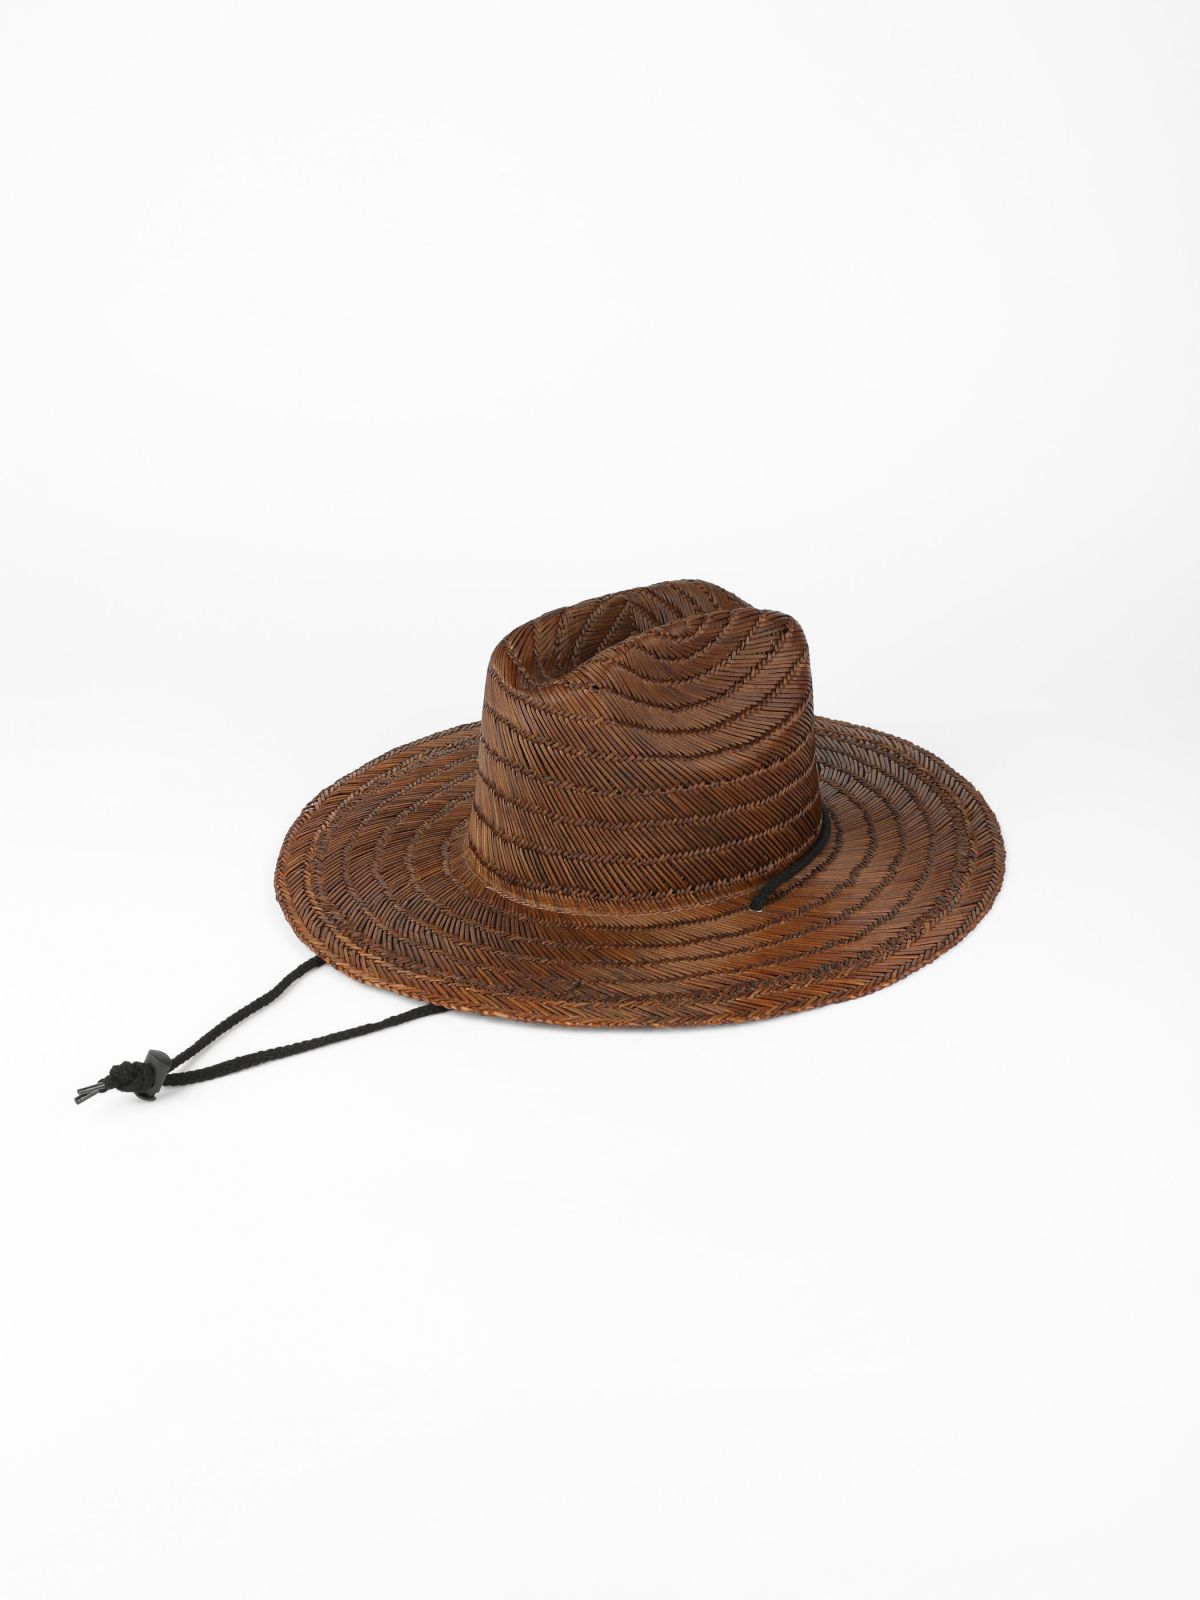  כובע רחב עם לוגו / גברים של QUIKSILVER